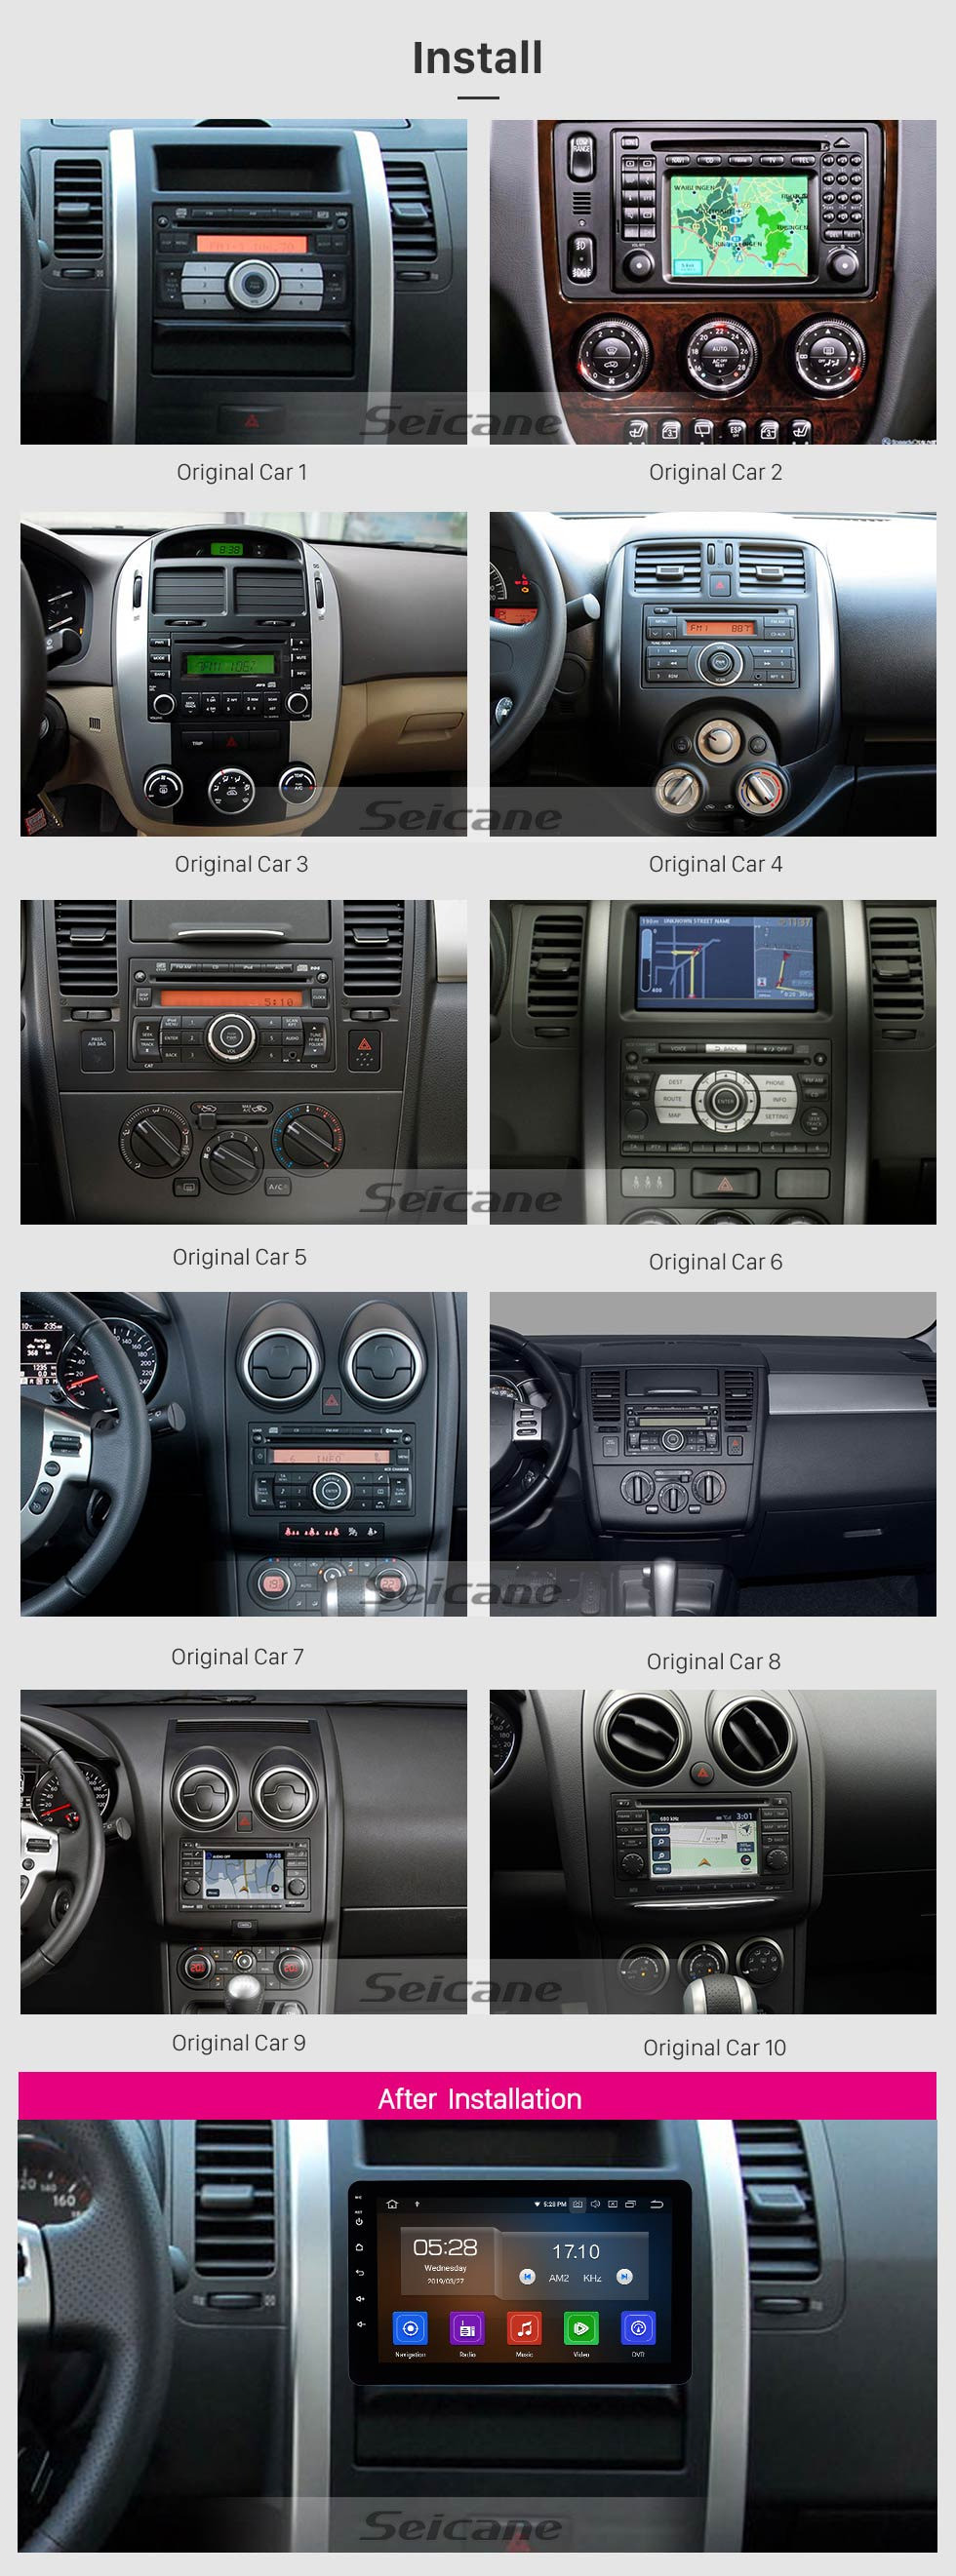 Seicane 8 polegada Rádio Universal Android 10.0 com Navegação GPS Bluetooth HD Touchscreen AUX Carplay Música suporte 1080 P Vídeo Digital TV Controle de Volante